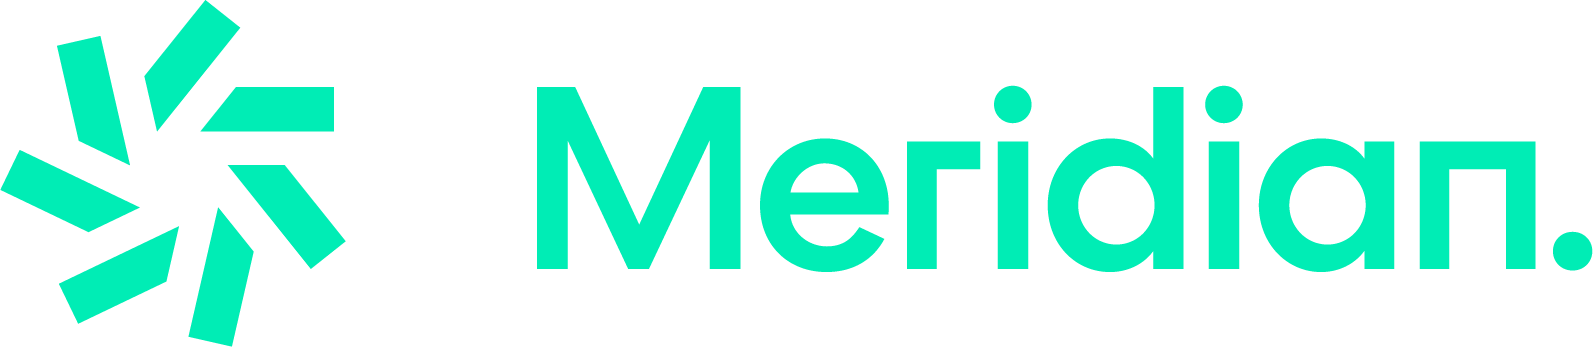 Meridian Energy Logo png